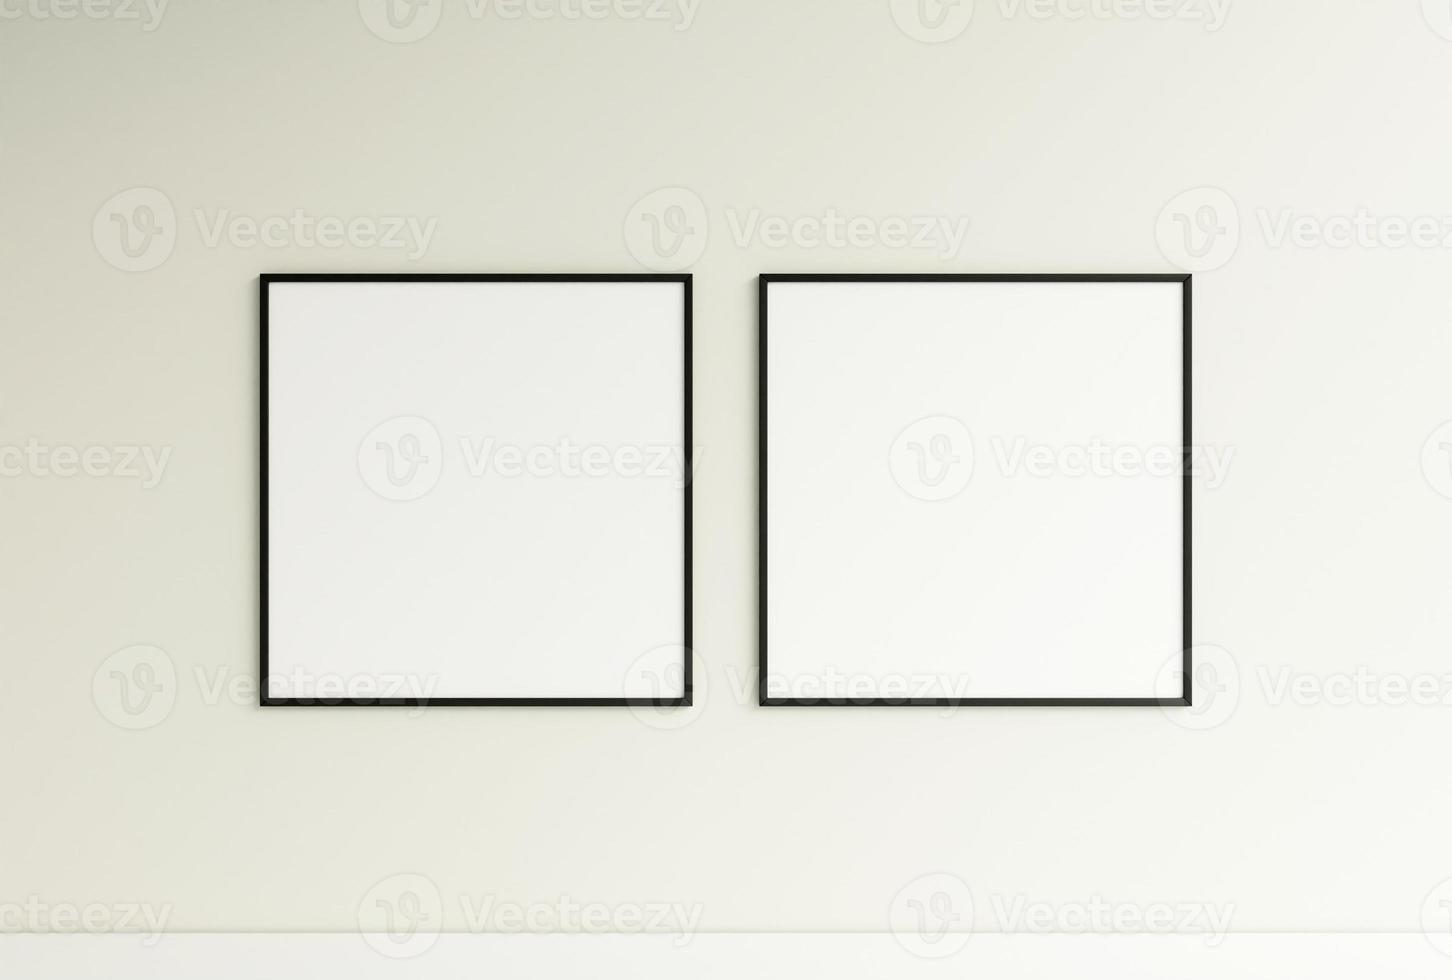 schoon en minimalistische voorkant visie plein zwart foto of poster kader mockup hangende Aan de muur. 3d weergave.